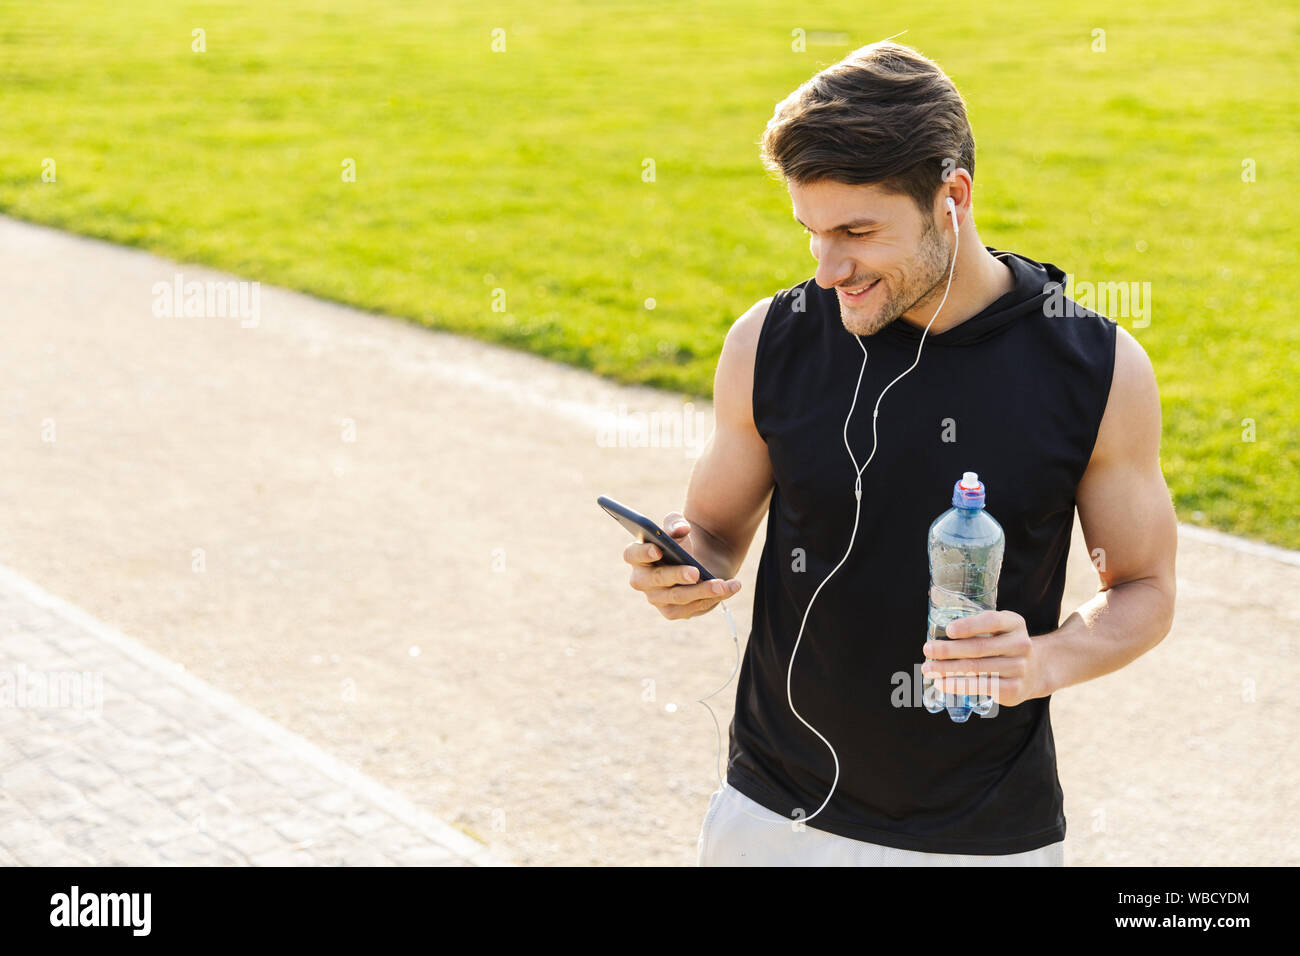 Bild von glücklichen Menschen in Sportkleidung Trinkwasser und Holding Handy während der Ausführung mit Ohrhörer in Green Park im Freien Stockfoto